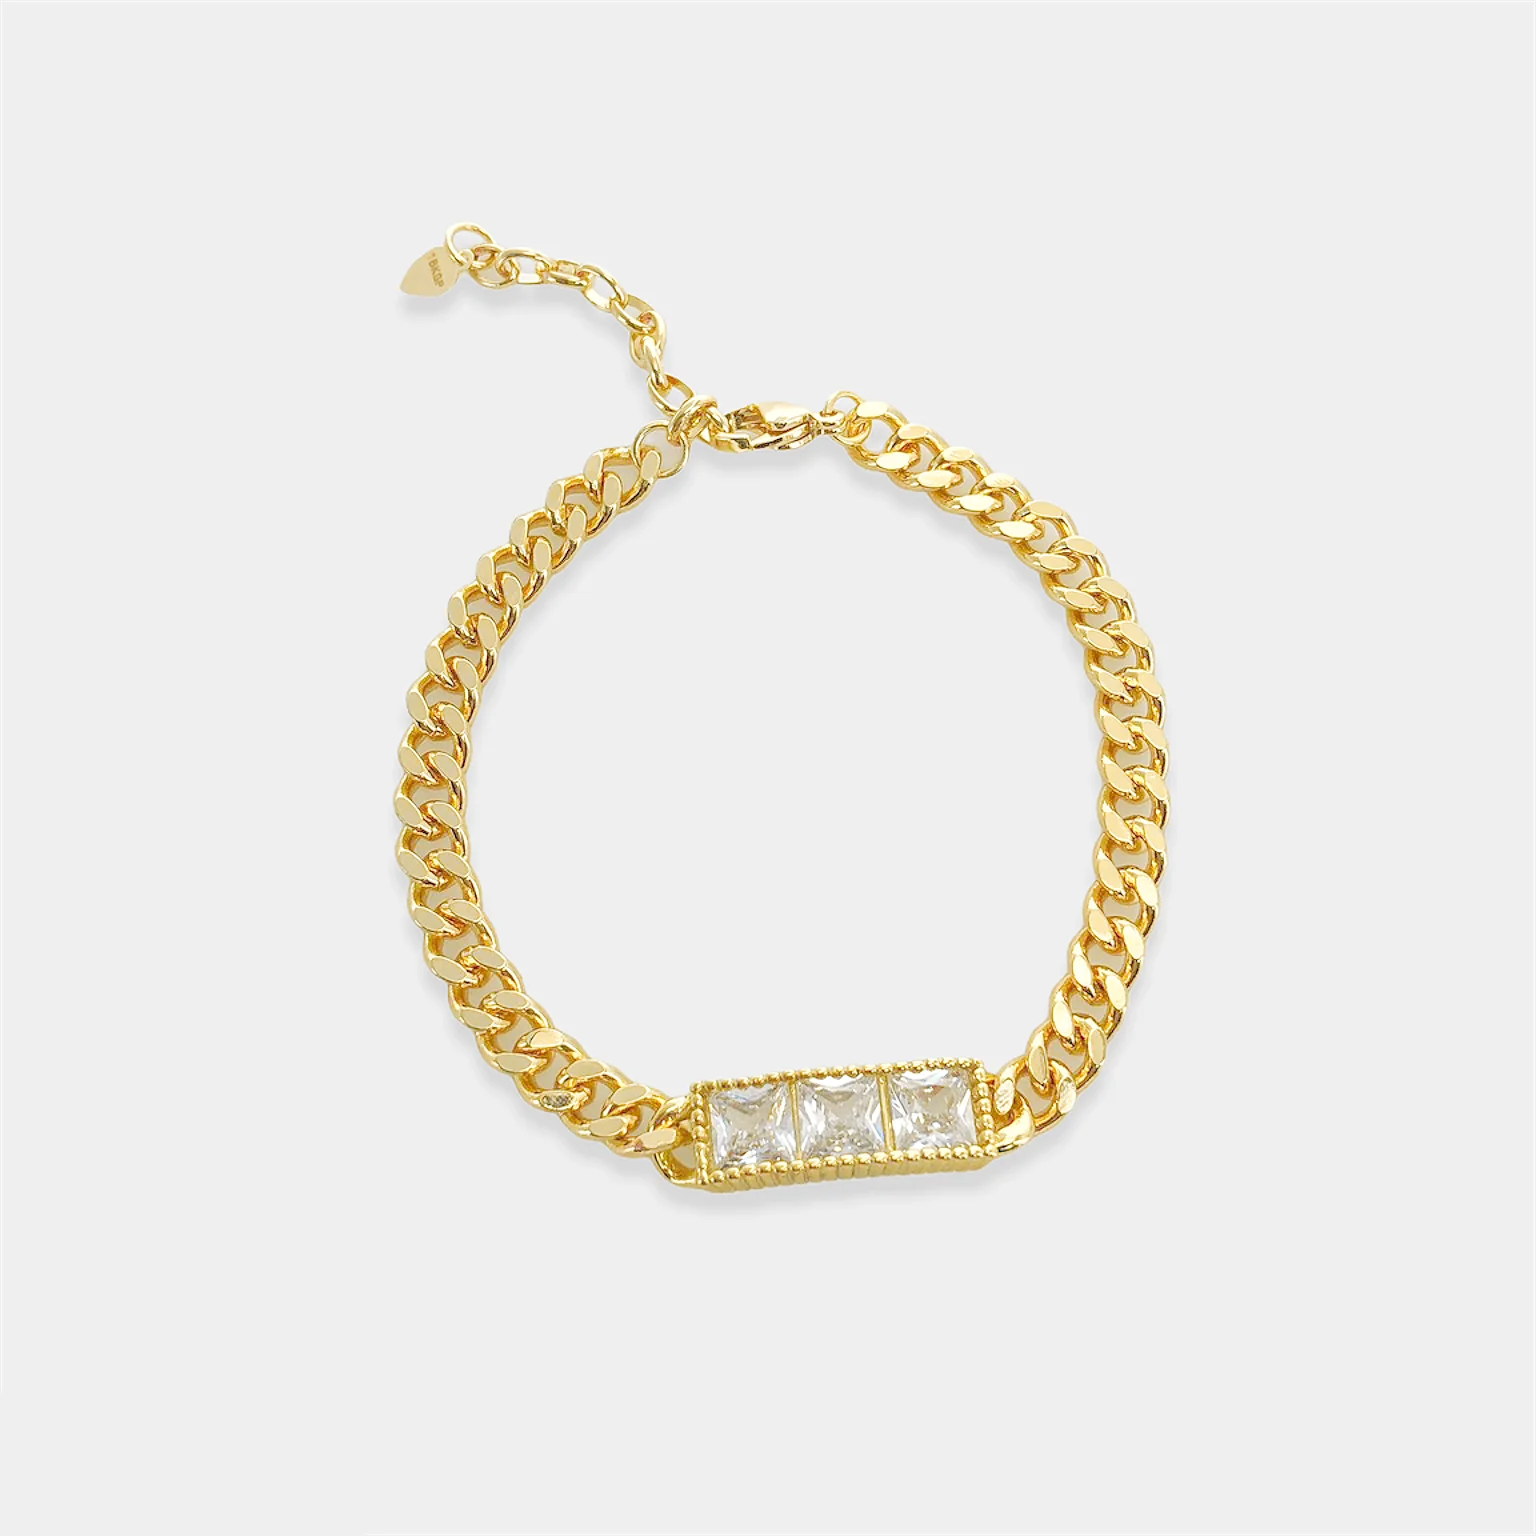 ABR055 - Curb Chain Bracelet